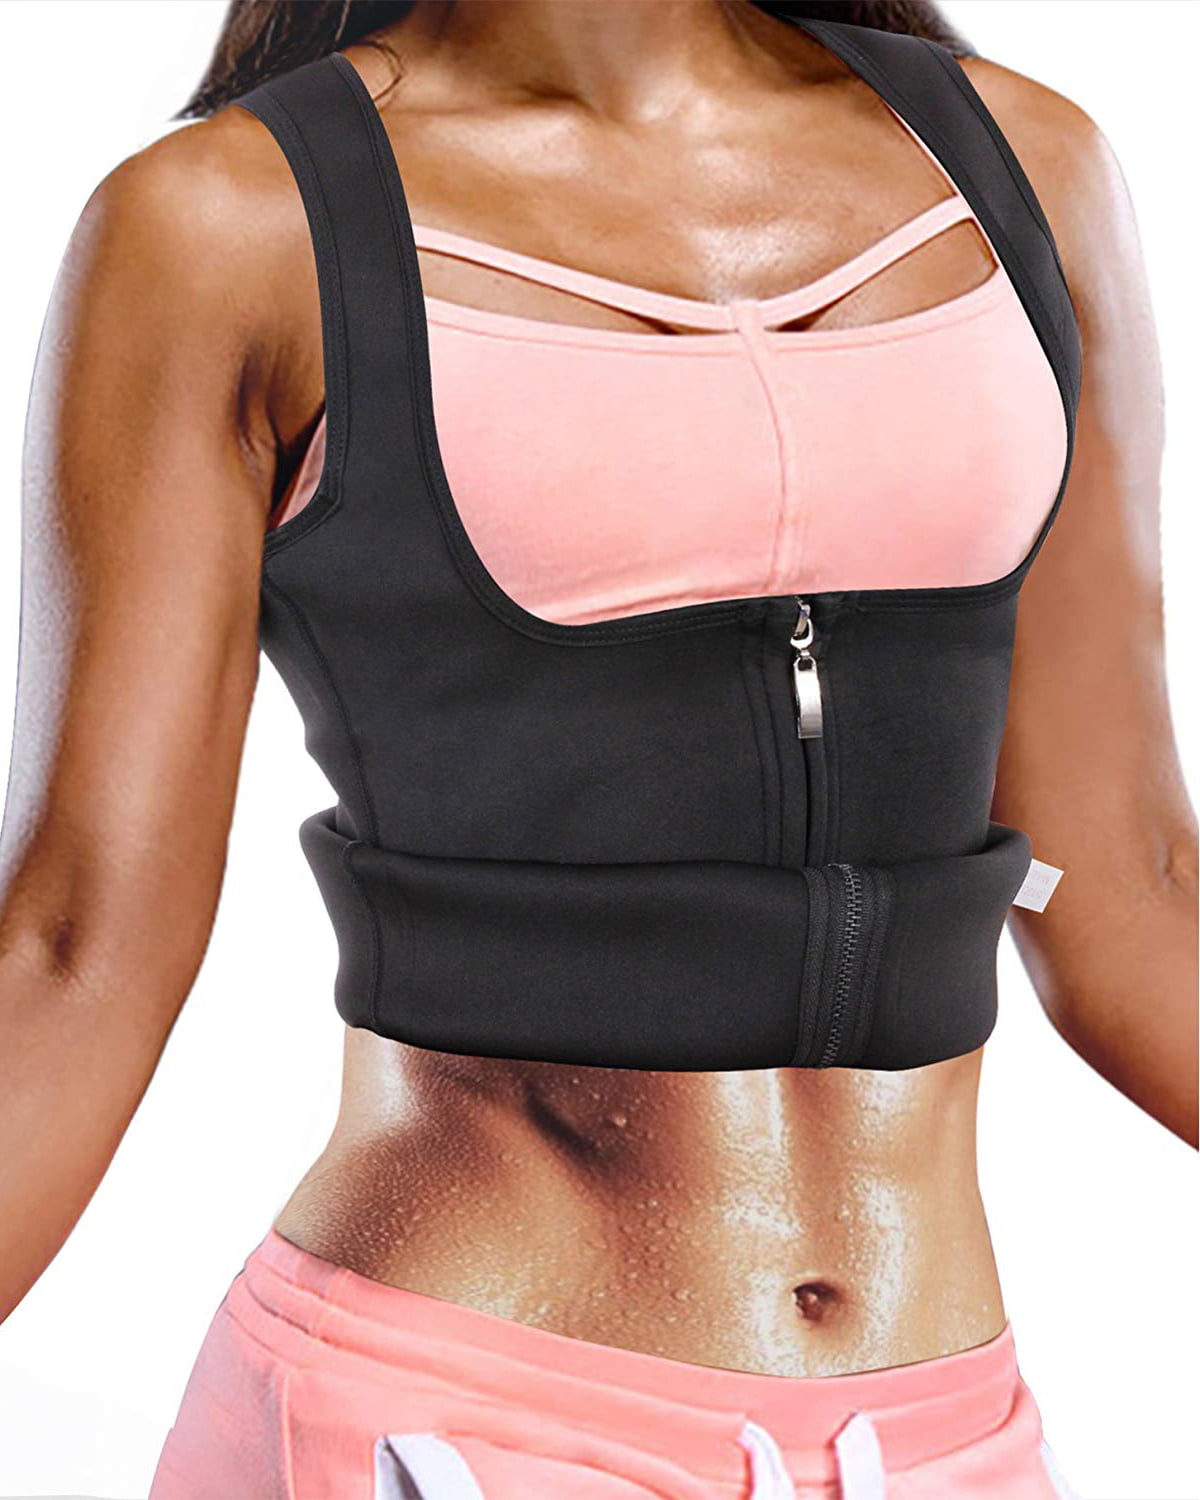 Women Hot Body Shaper Pants Thermo Neoprene Slimming Sweat Sauna Waist Trainer 